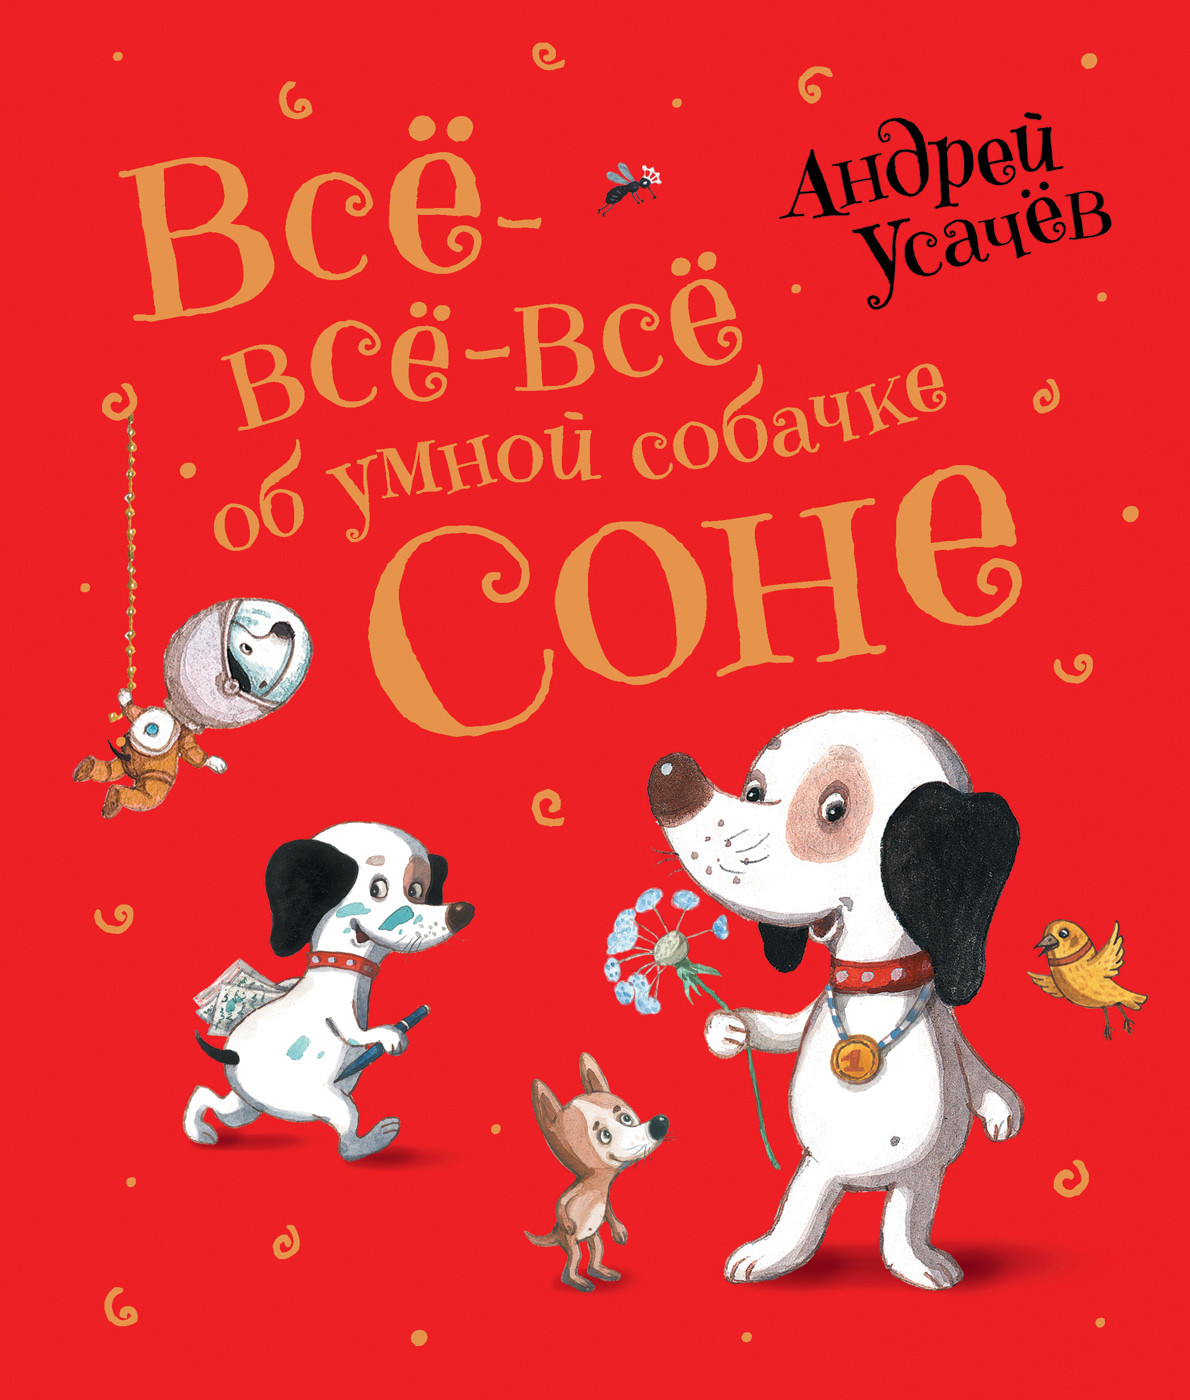 Книга Умная собачка Соня - читать онлайн, бесплатно. Автор: Андрей Усачев